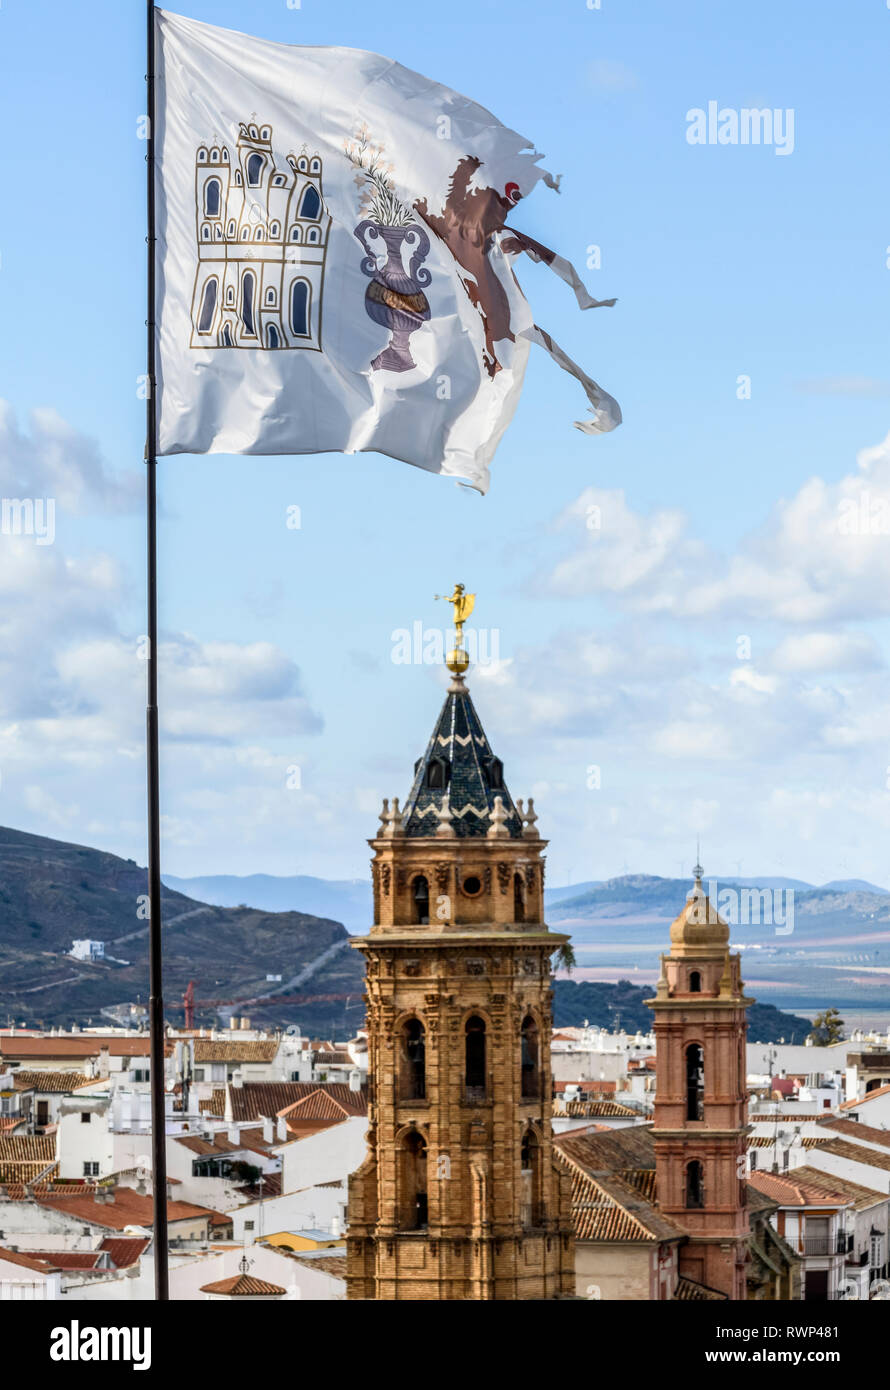 La ville d'Antequera avec tours d'église et un traitement RIP, surmonté d'un drapeau à l'avant-plan ; Antequera, Malaga, Espagne Banque D'Images